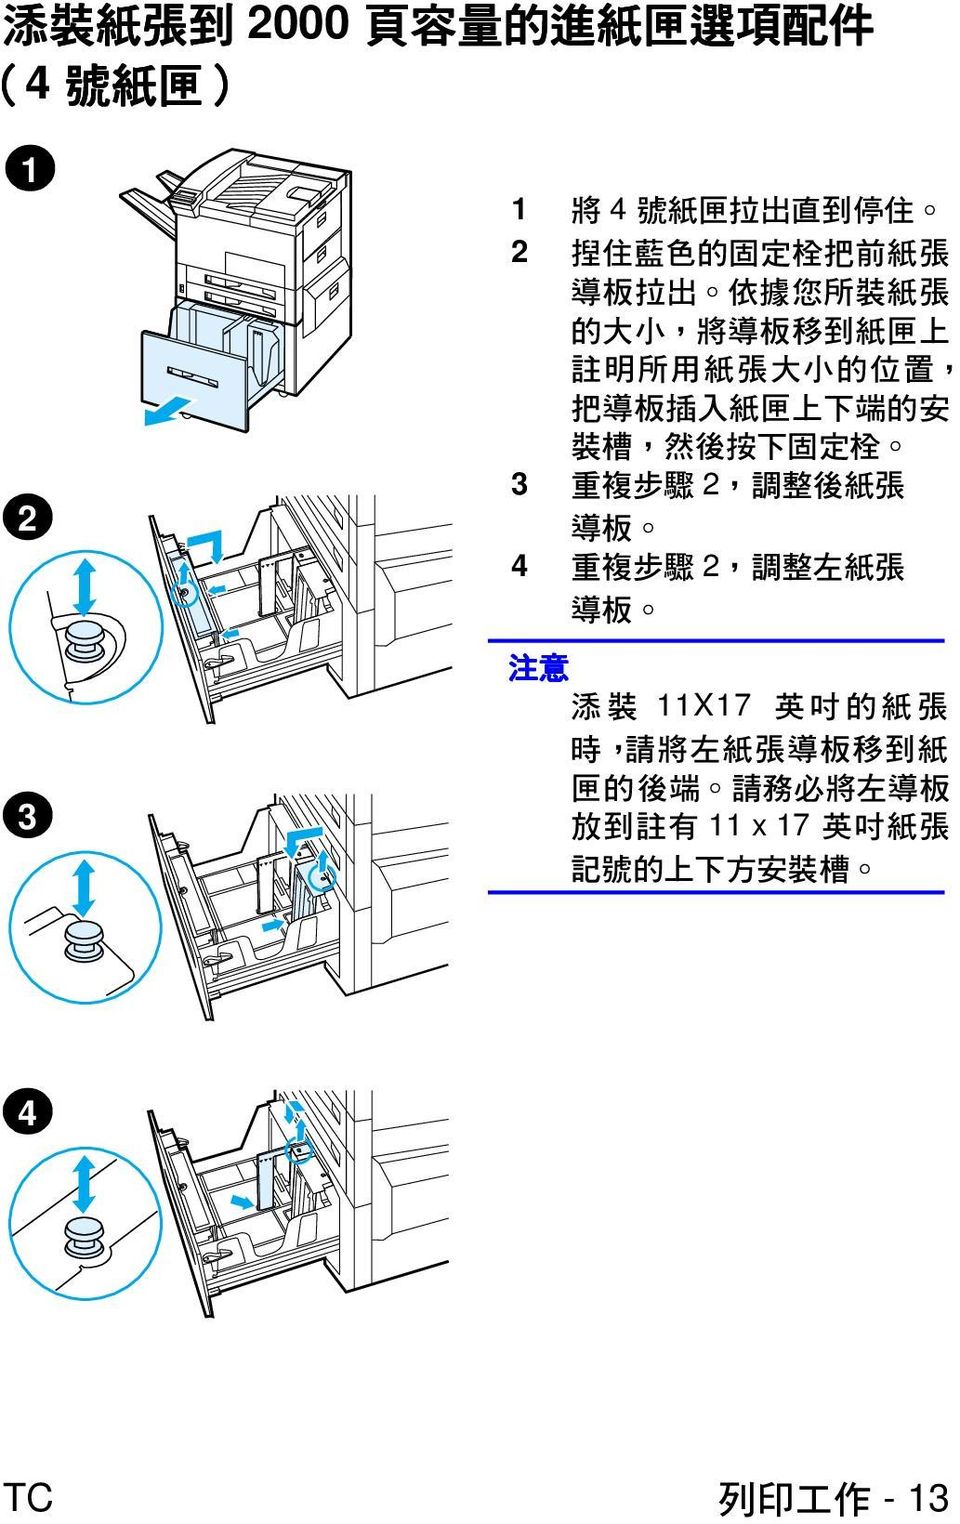 裝 槽, 然 後 按 下 固 定 栓 3 重 複 步 驟 2, 調 整 後 紙 張 導 板 4 重 複 步 驟 2, 調 整 左 紙 張 導 板 注 意 添 裝 11X17 英 吋 的 紙 張